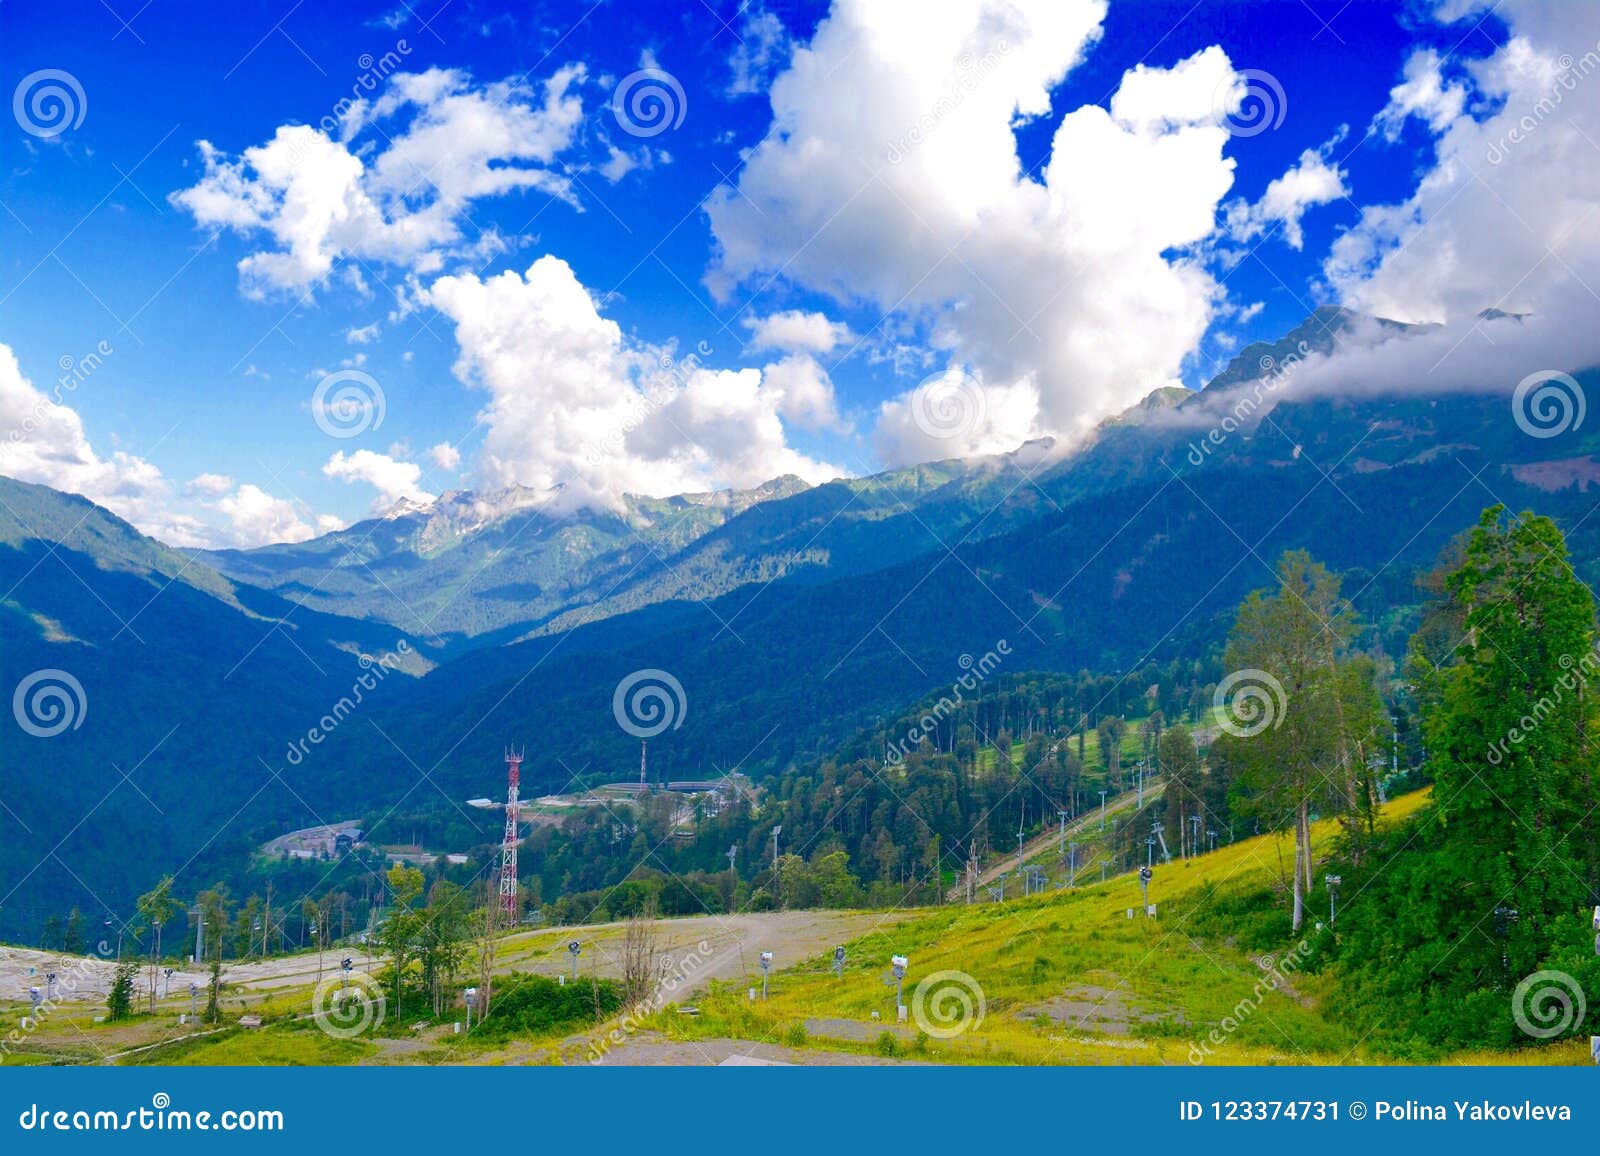 Nature of Bashkiriya, and Landscape Stock Image Image of bashkiriya, landscape: 123374731